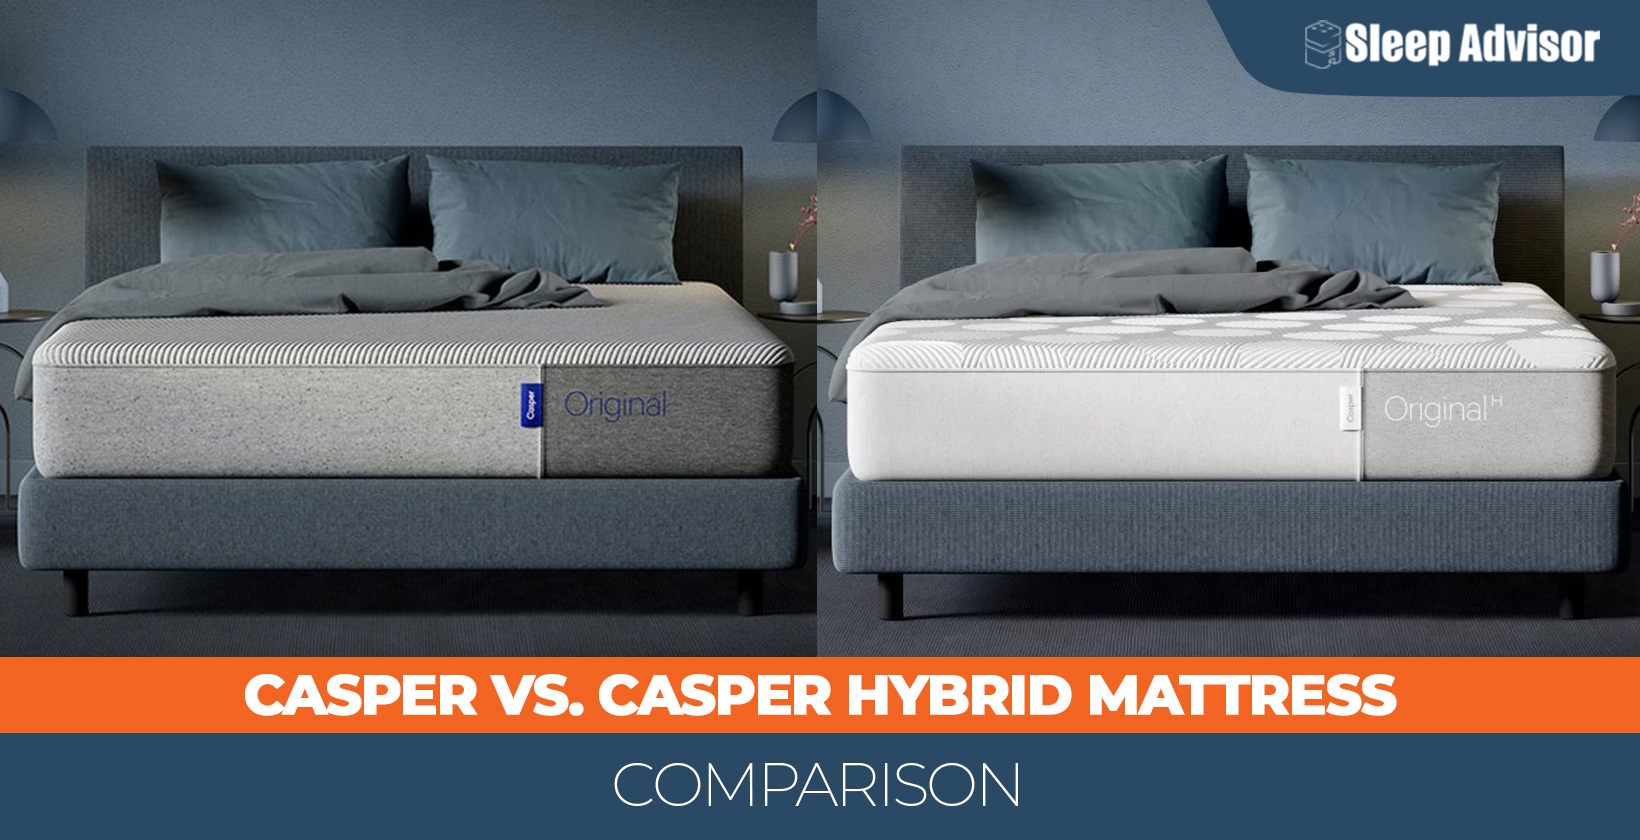 Casper versus Casper Hybrid compared mattress